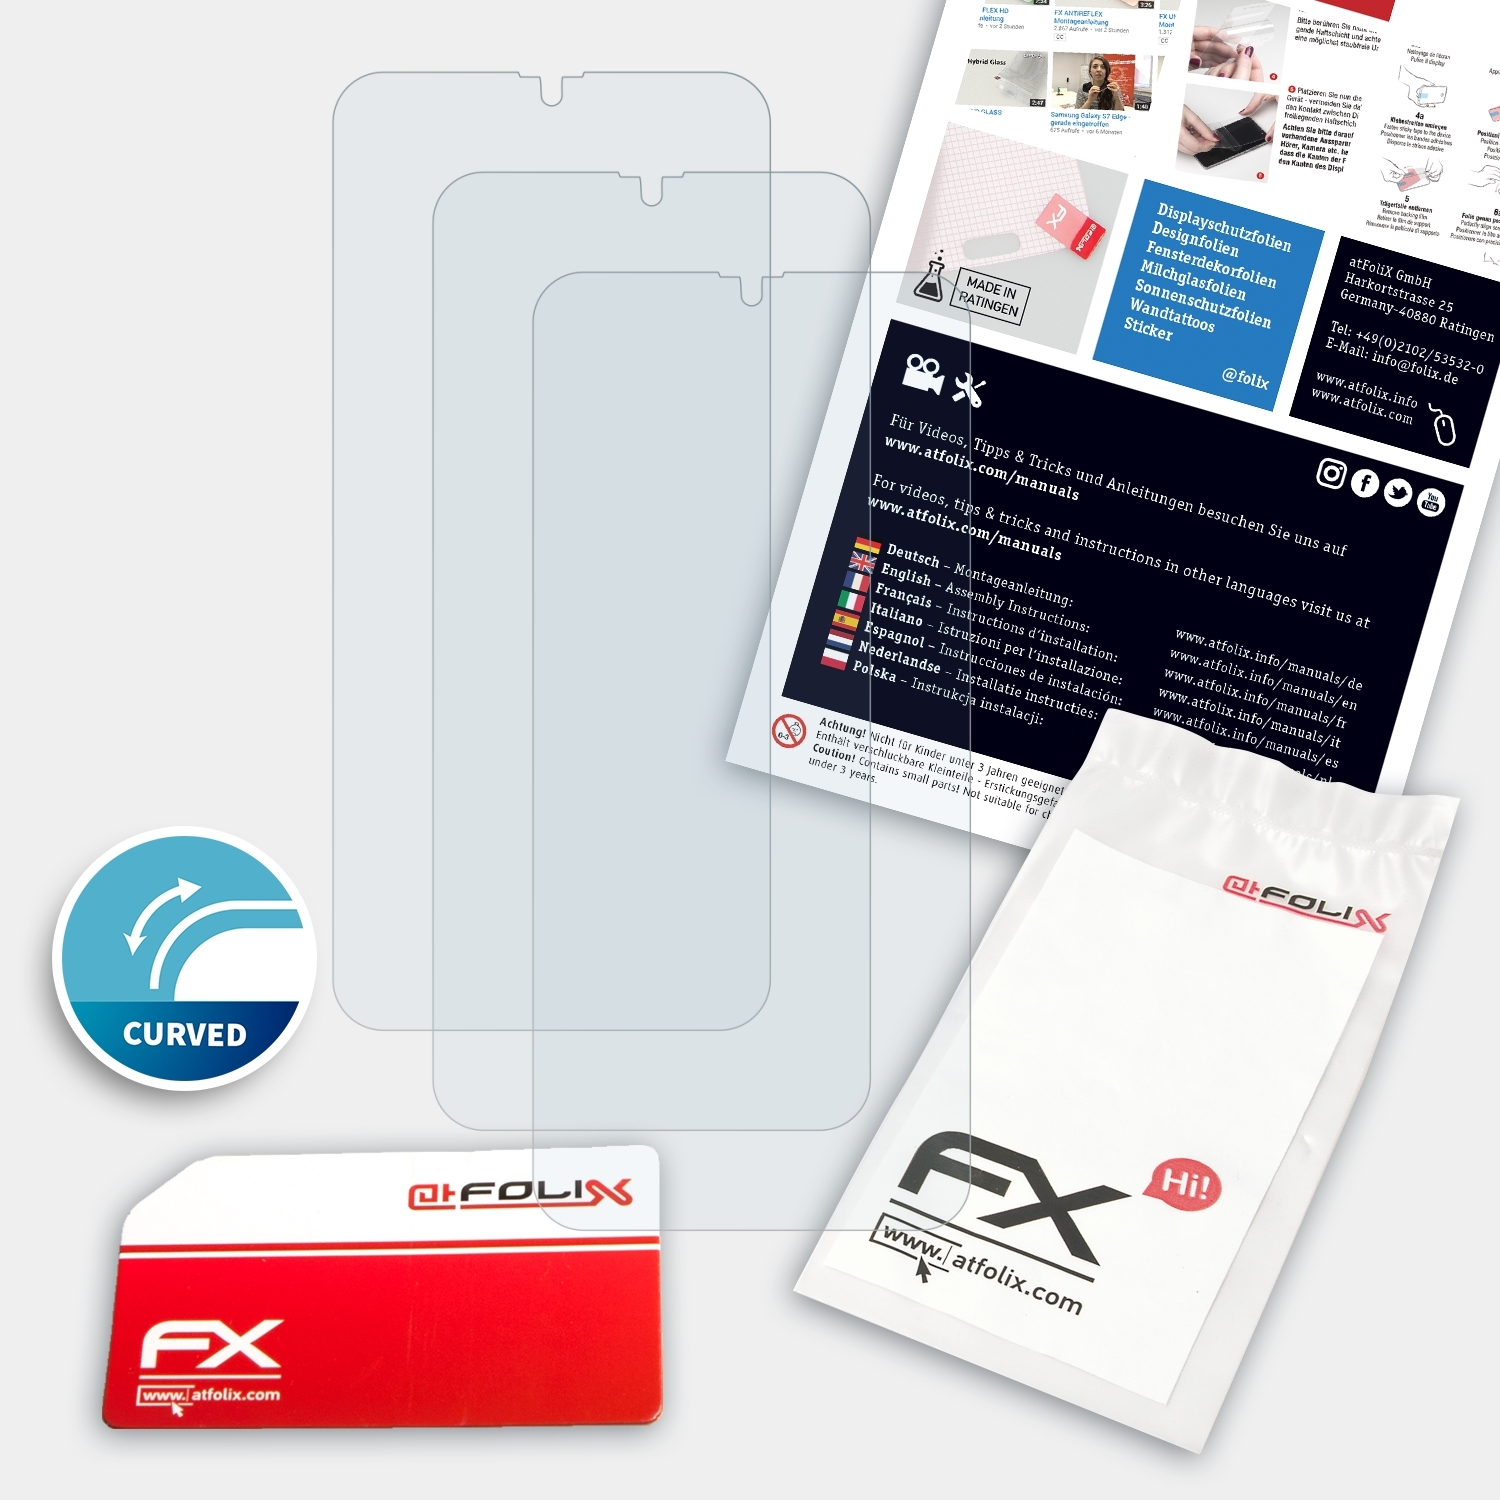 3x FX-ActiFleX Note Ulefone Displayschutz(für 7P) ATFOLIX